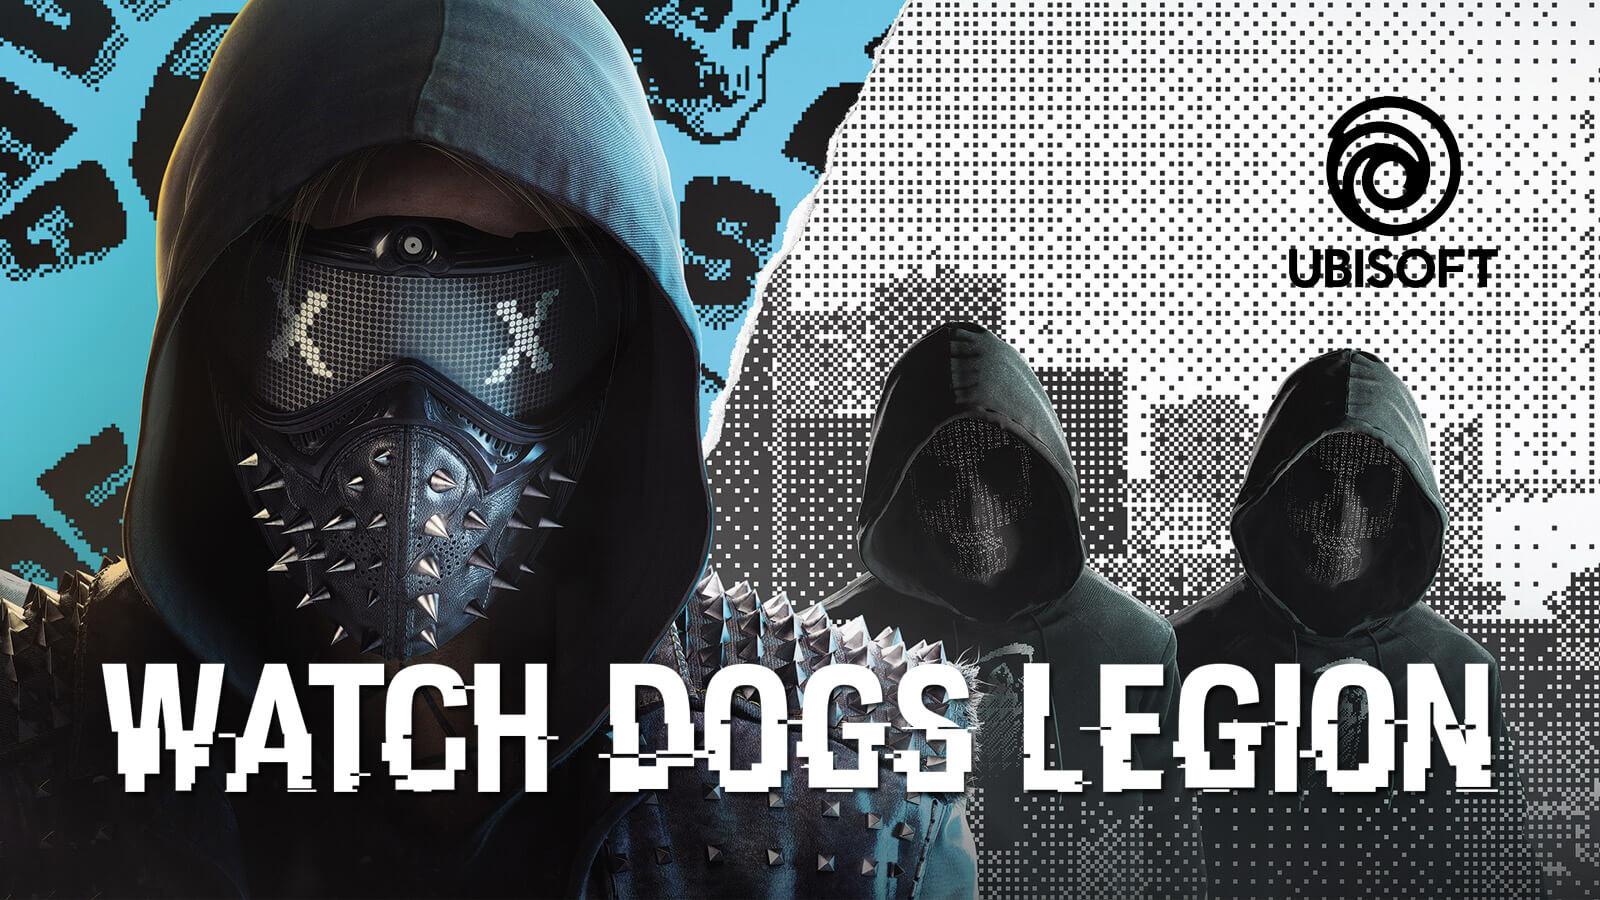 Watch Dogs: Legion Confirmed